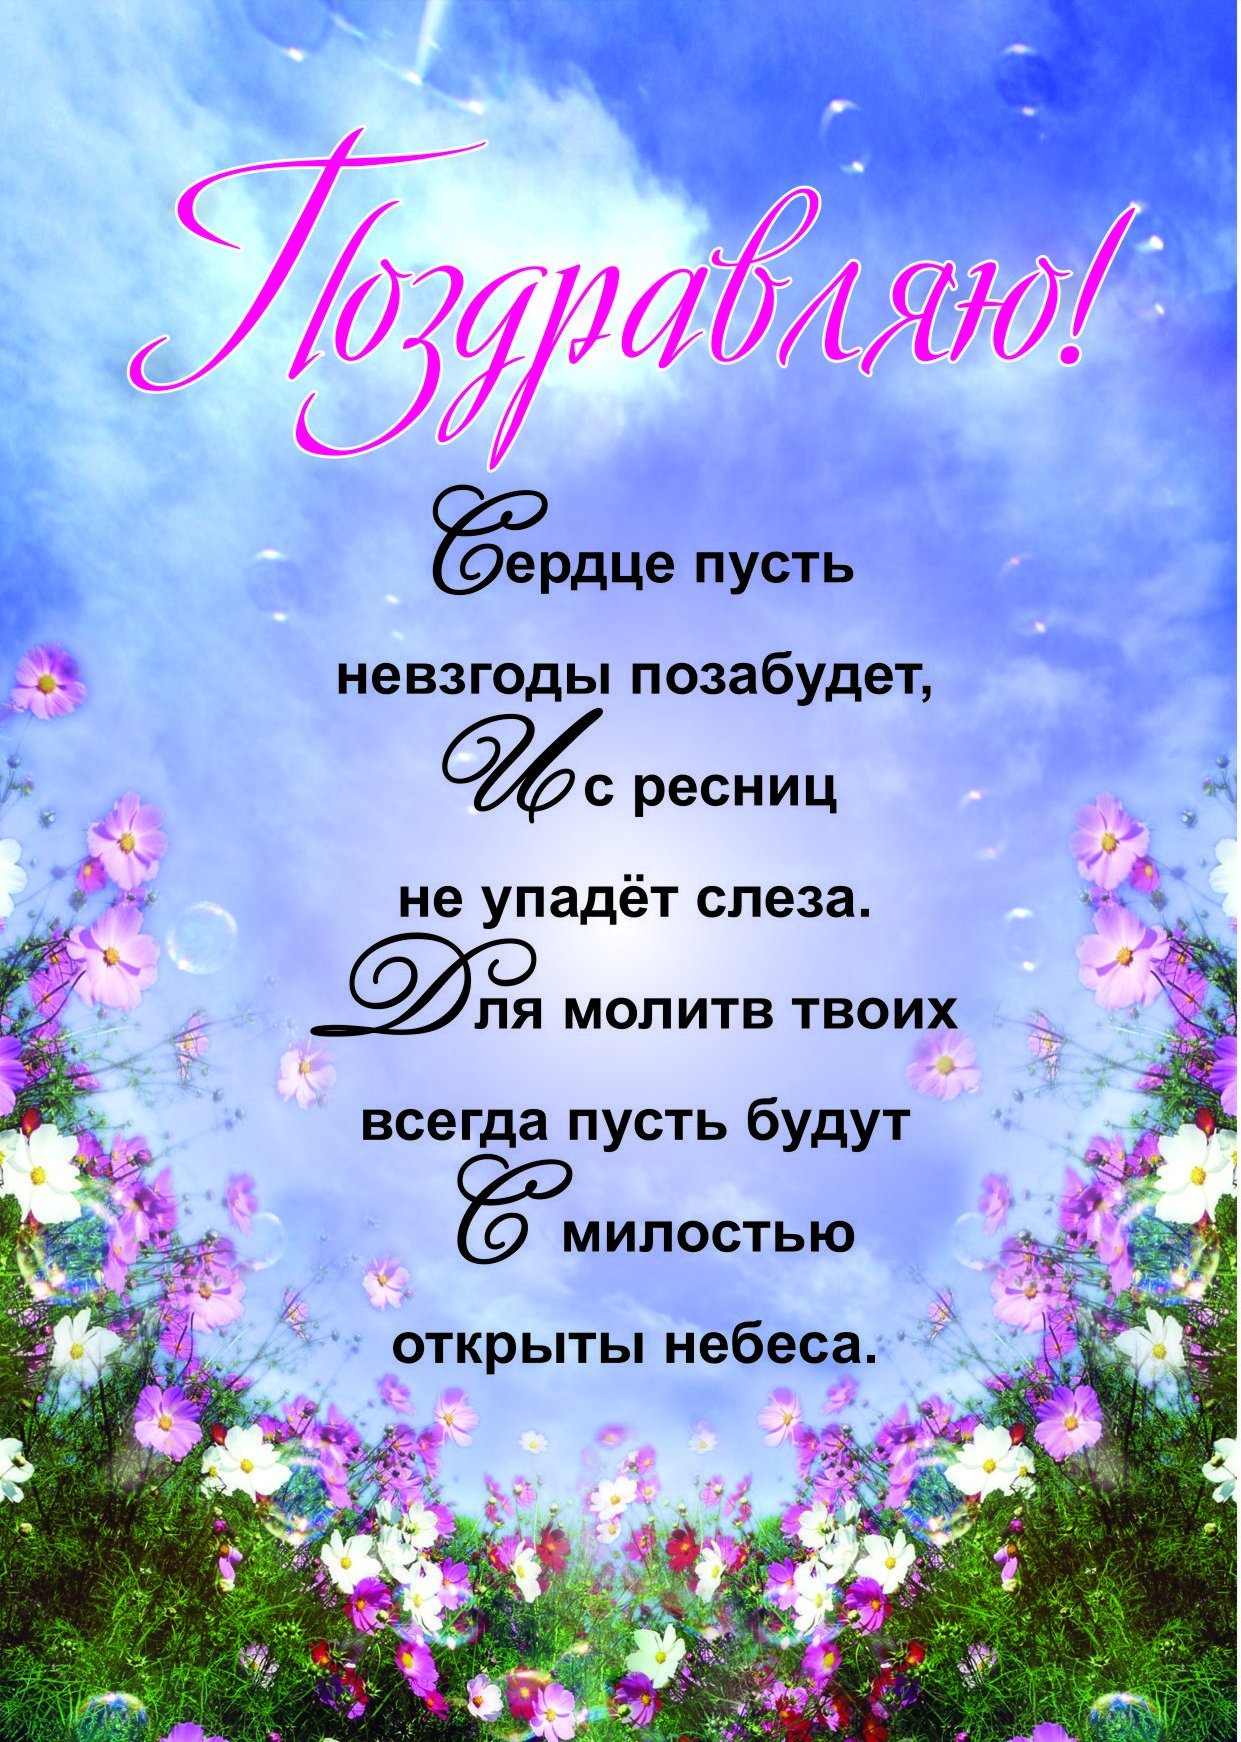 51 Православное поздравление с днём рождения маме